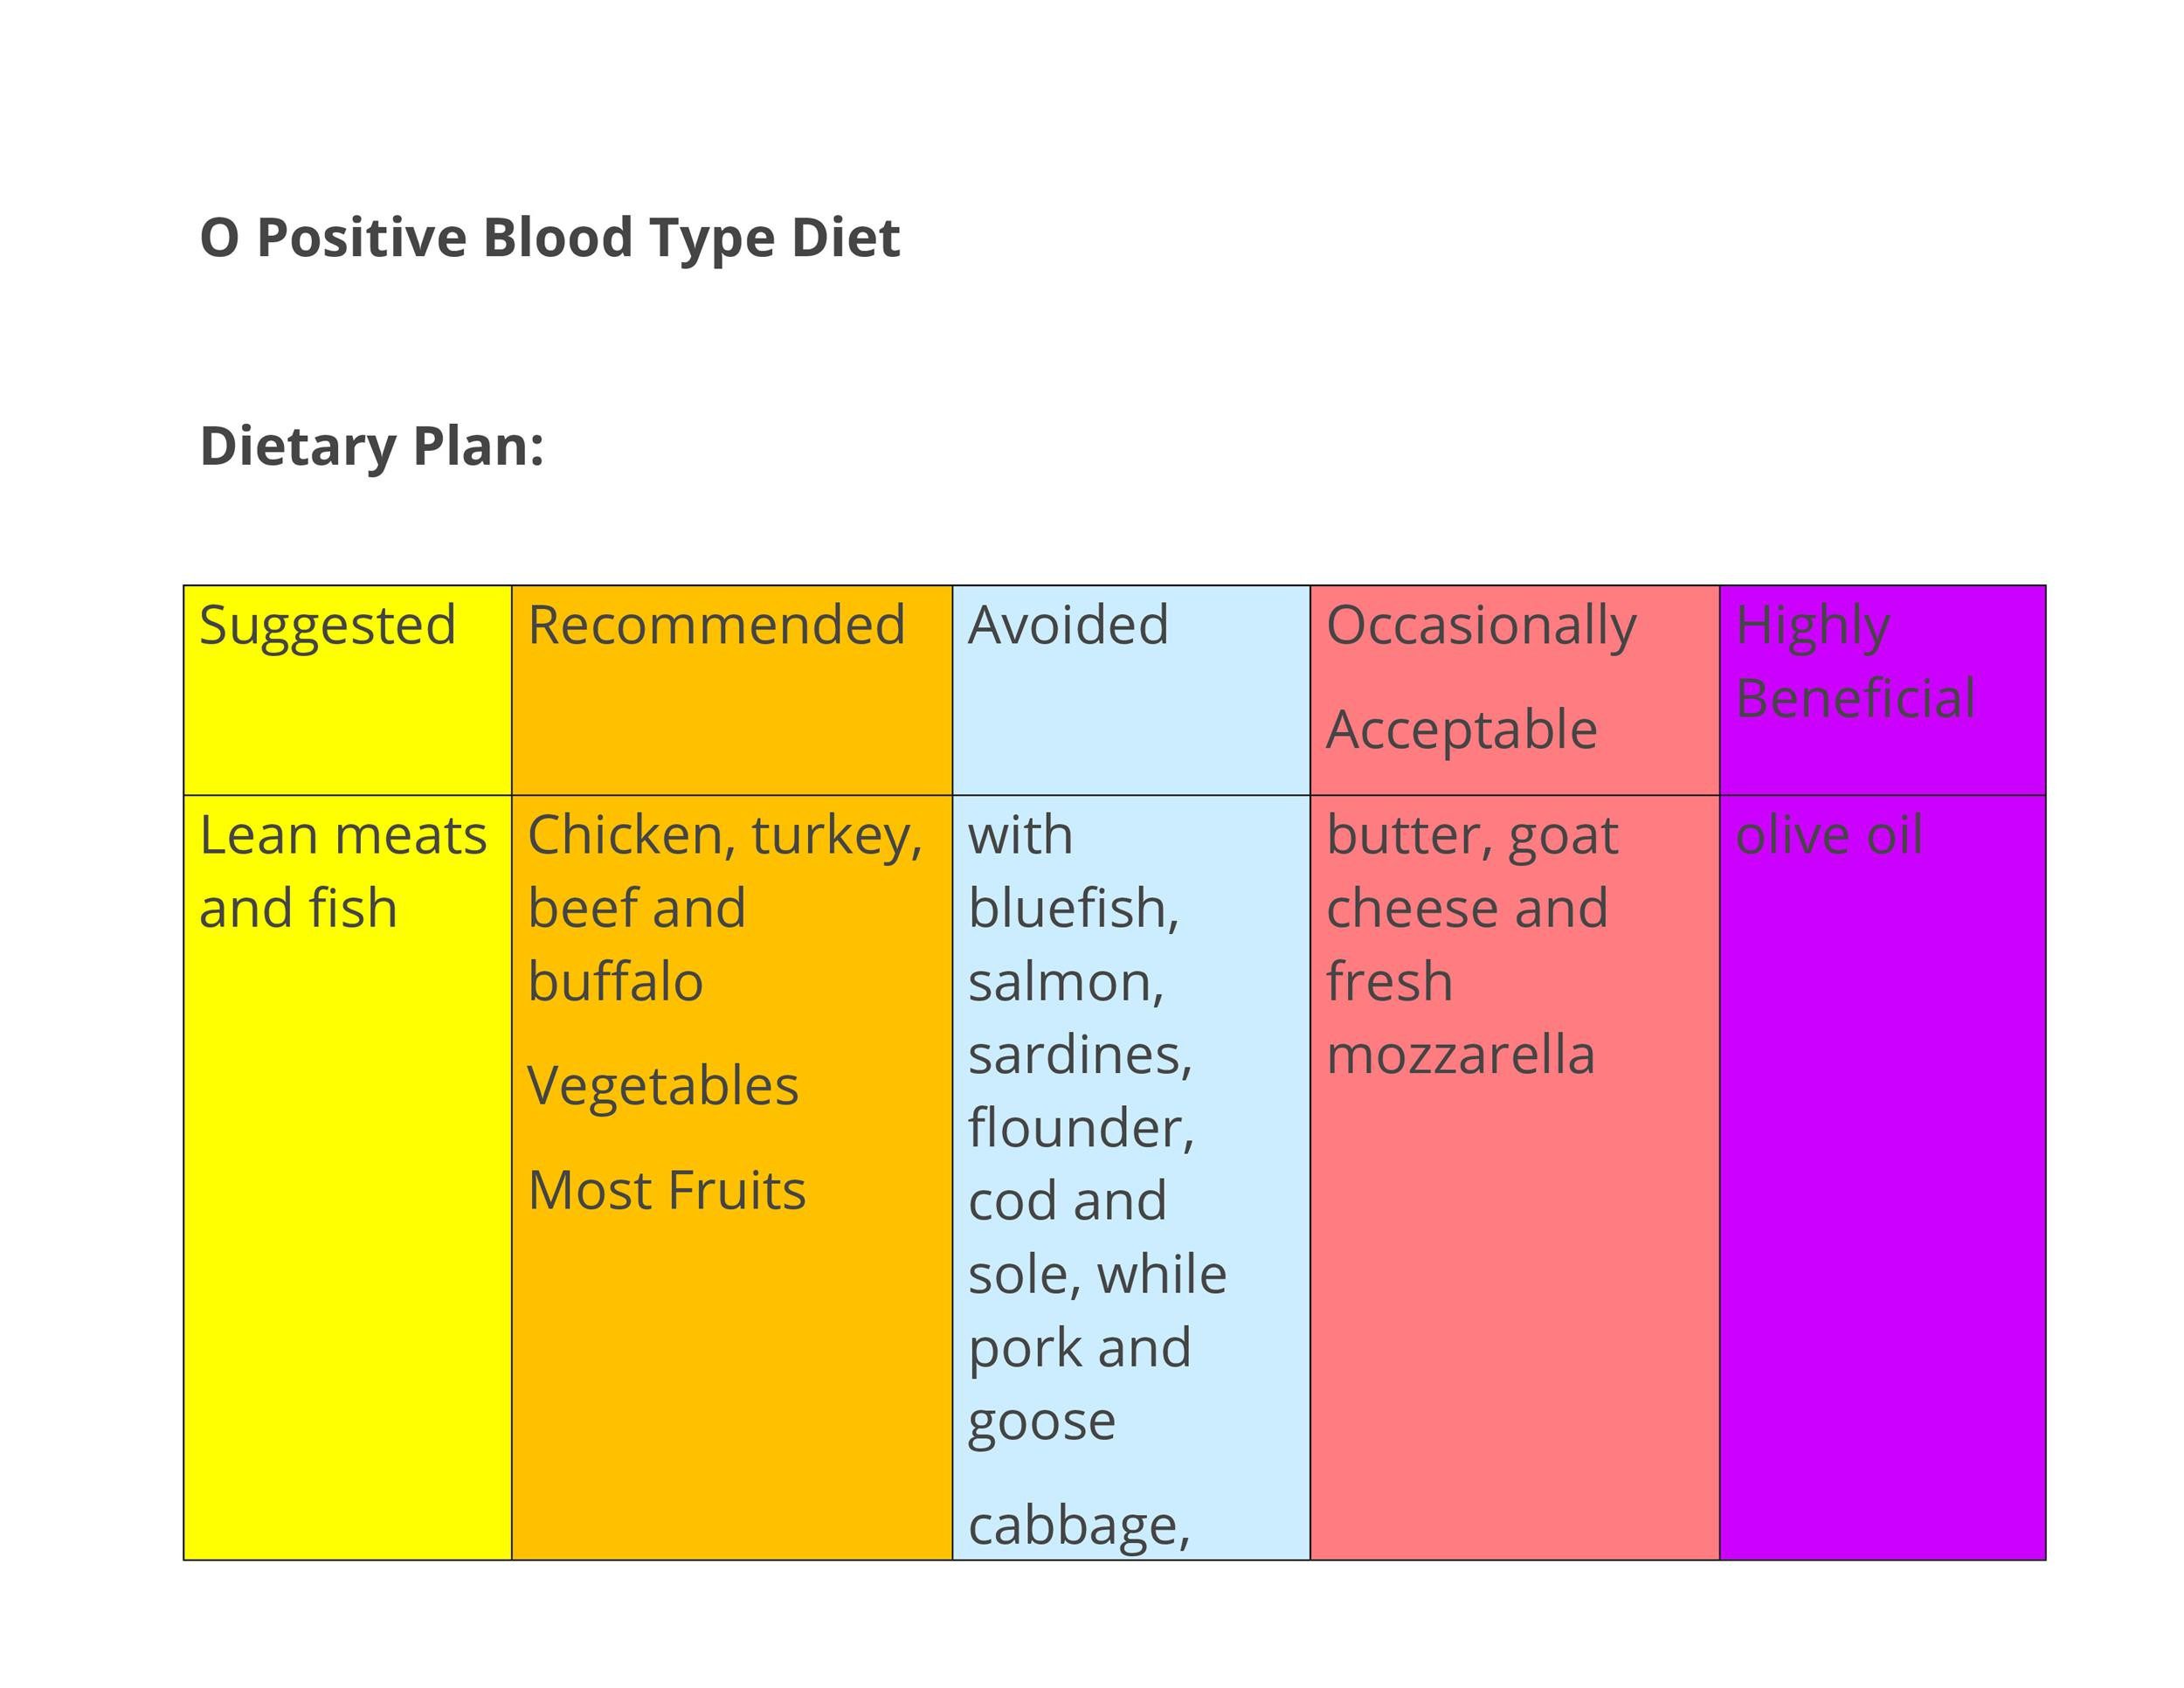 Blood type diet